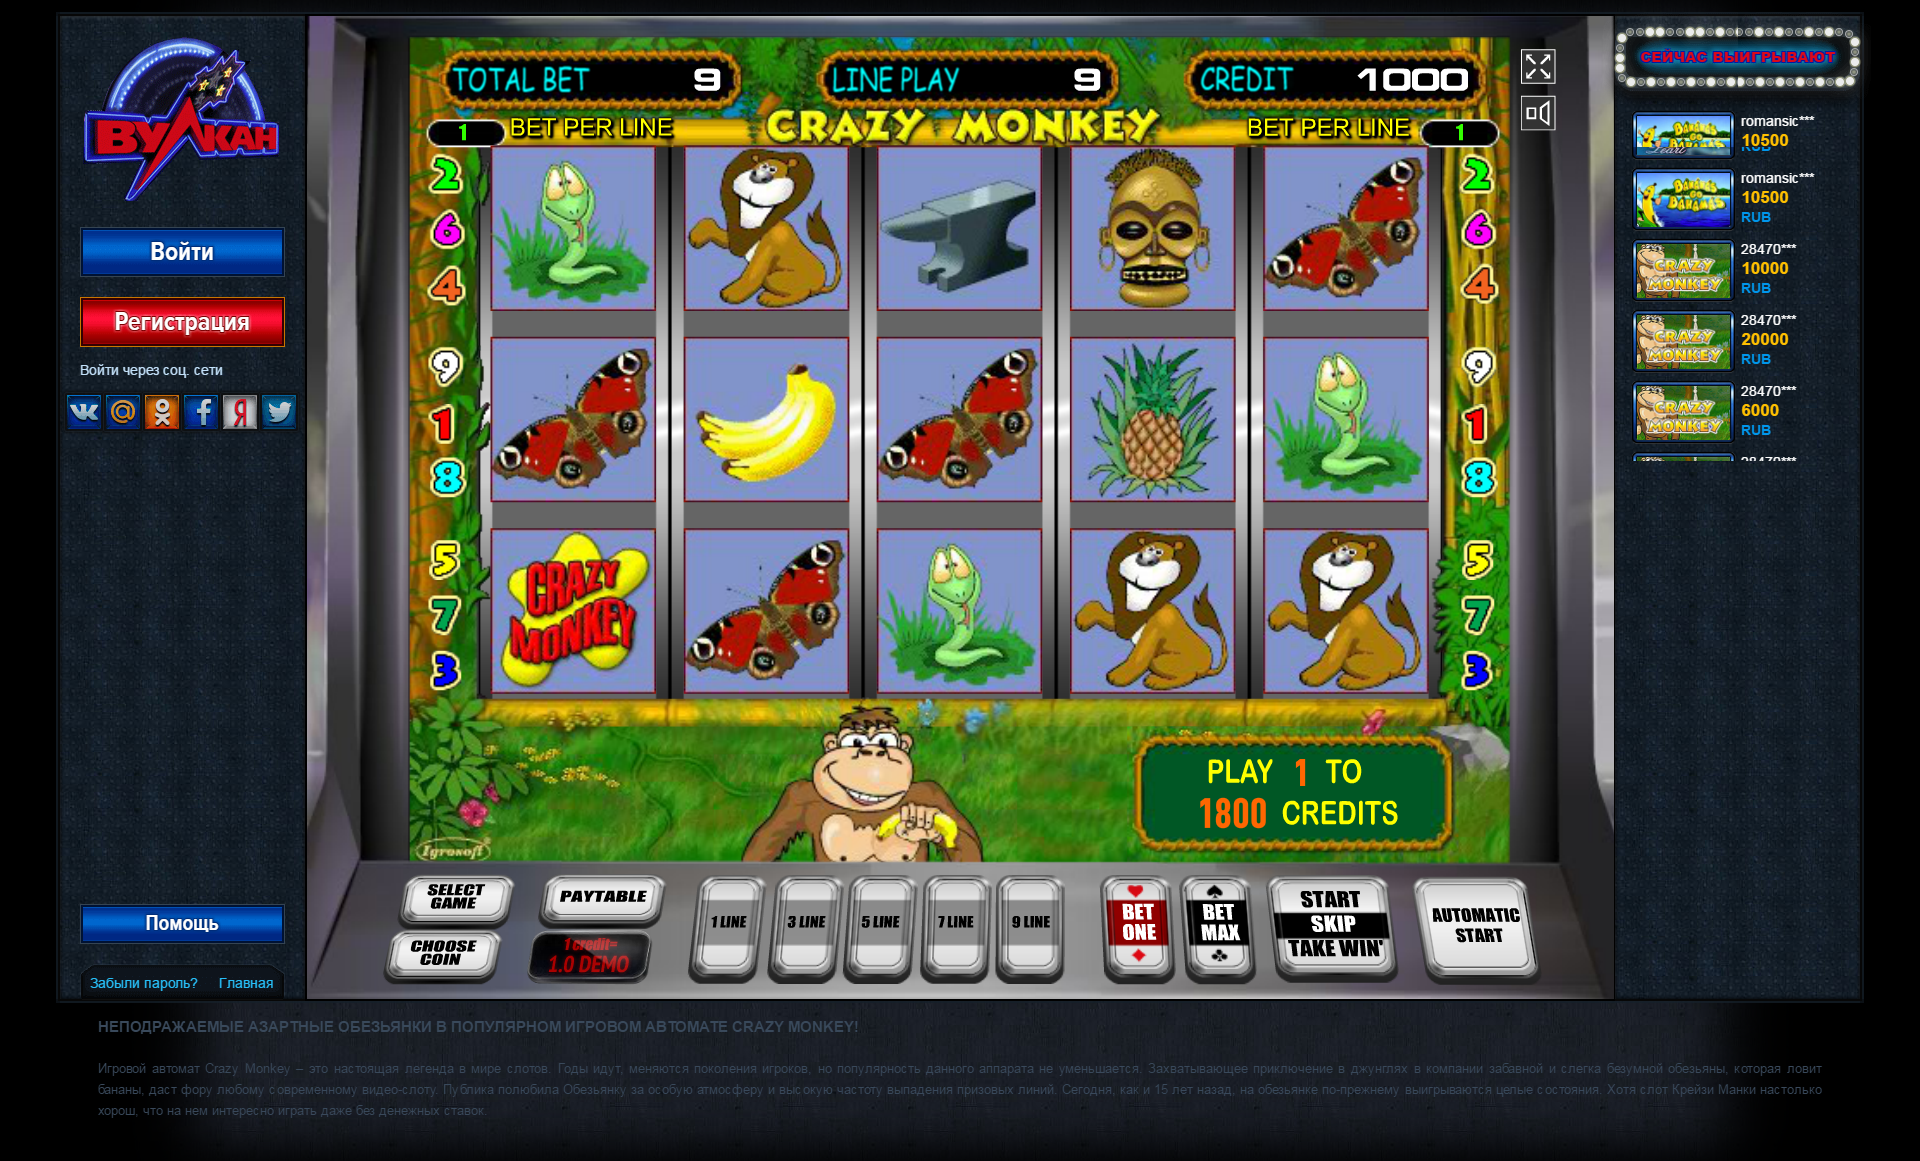 Слоты игровых автоматов вулкан россия на деньги казино вулкан игровые автоматы играть бесплатно онлайн без регистрации в демо